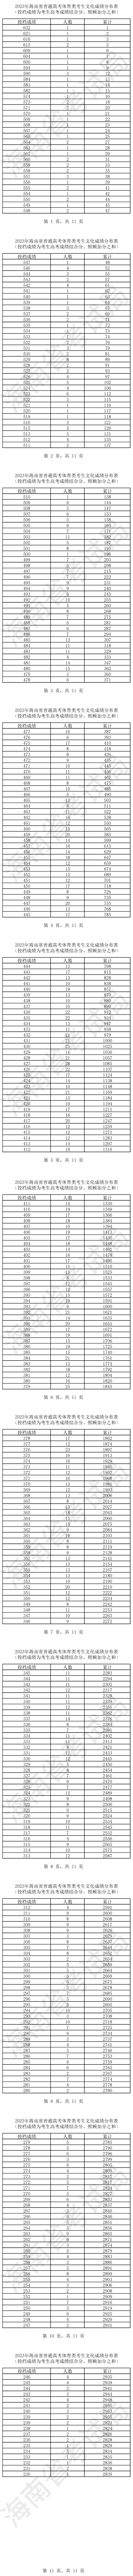 2023年海南省普通高考体育类考生文化成绩分布表